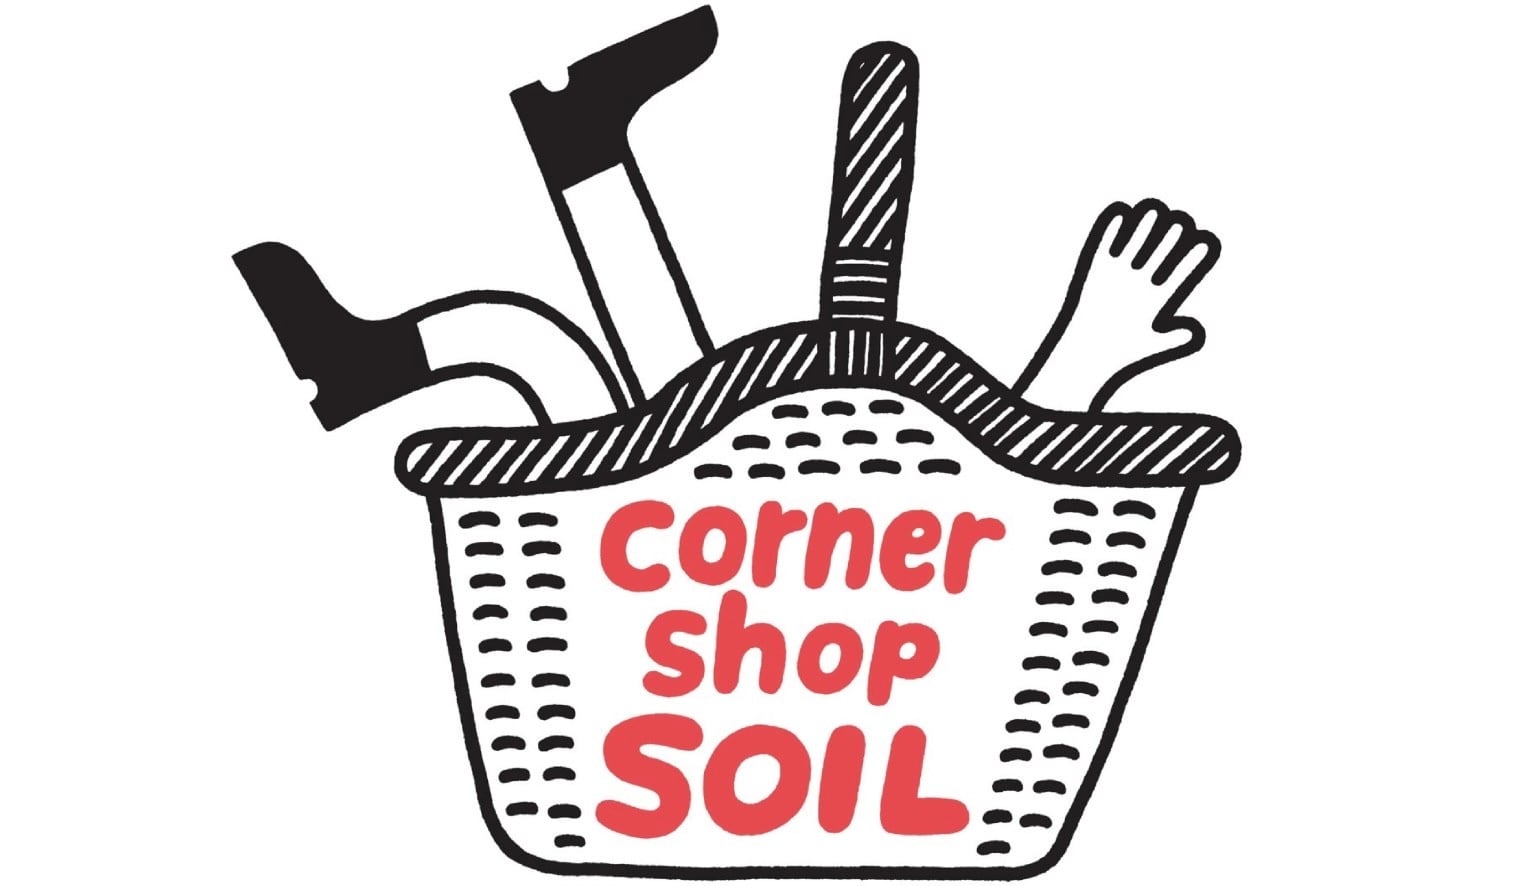 CORNER SHOP SOIL